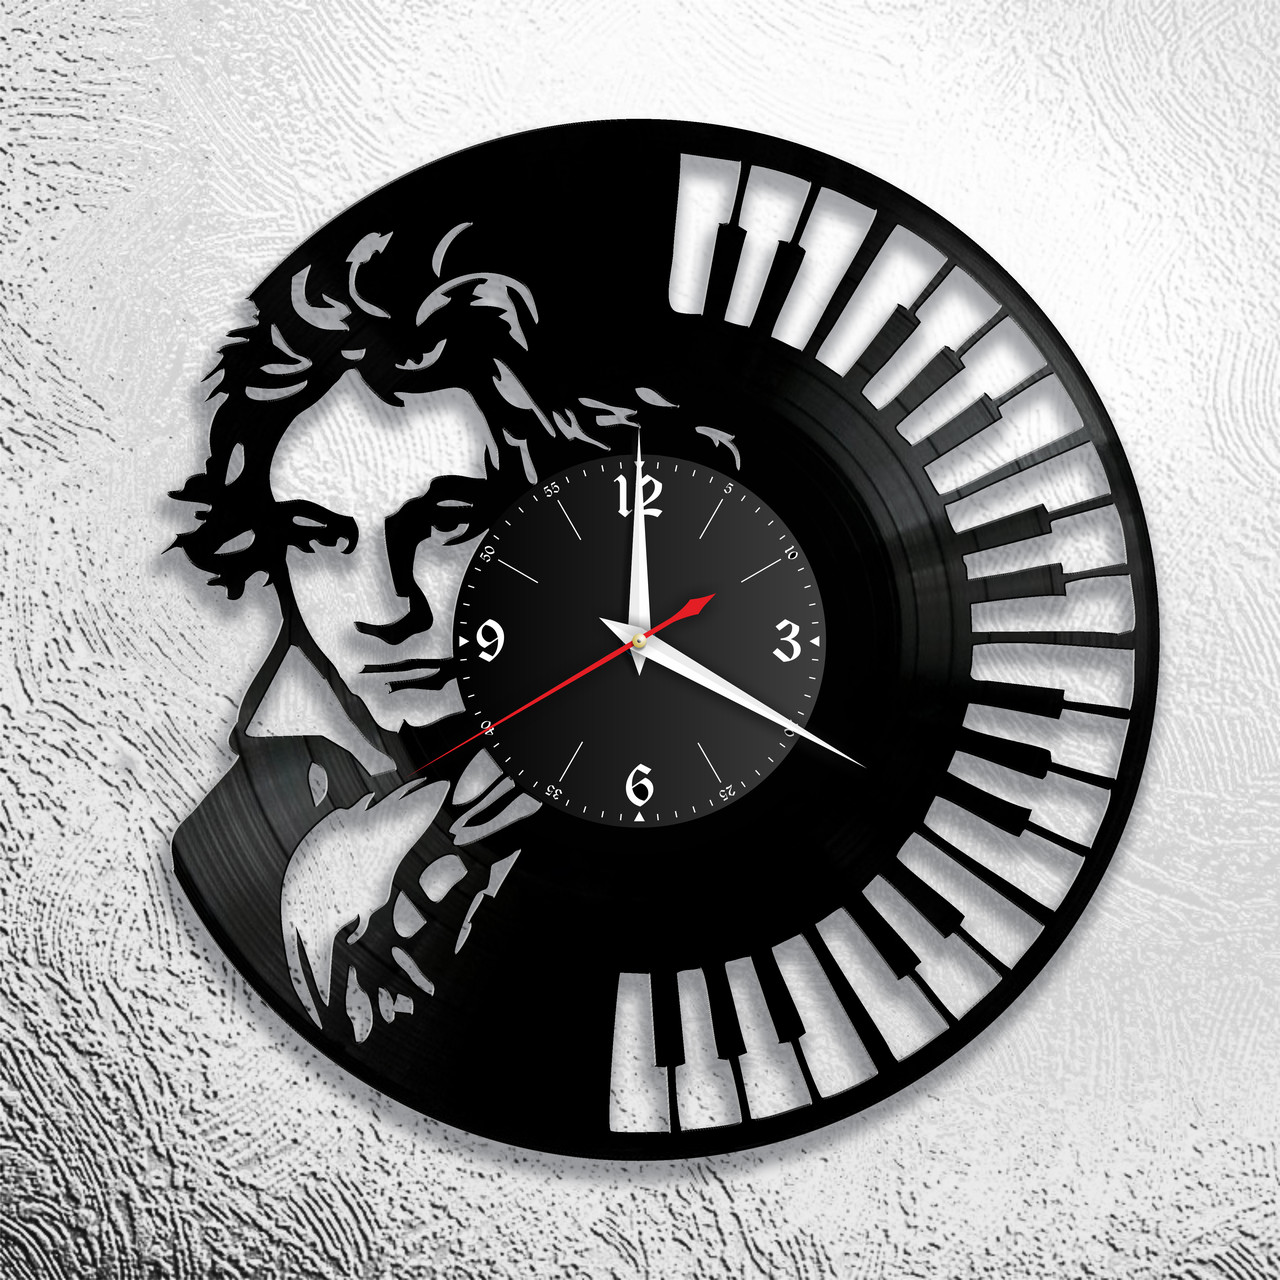 Оригинальные часы из виниловых пластинок "Бетховен" версия 1, фото 1